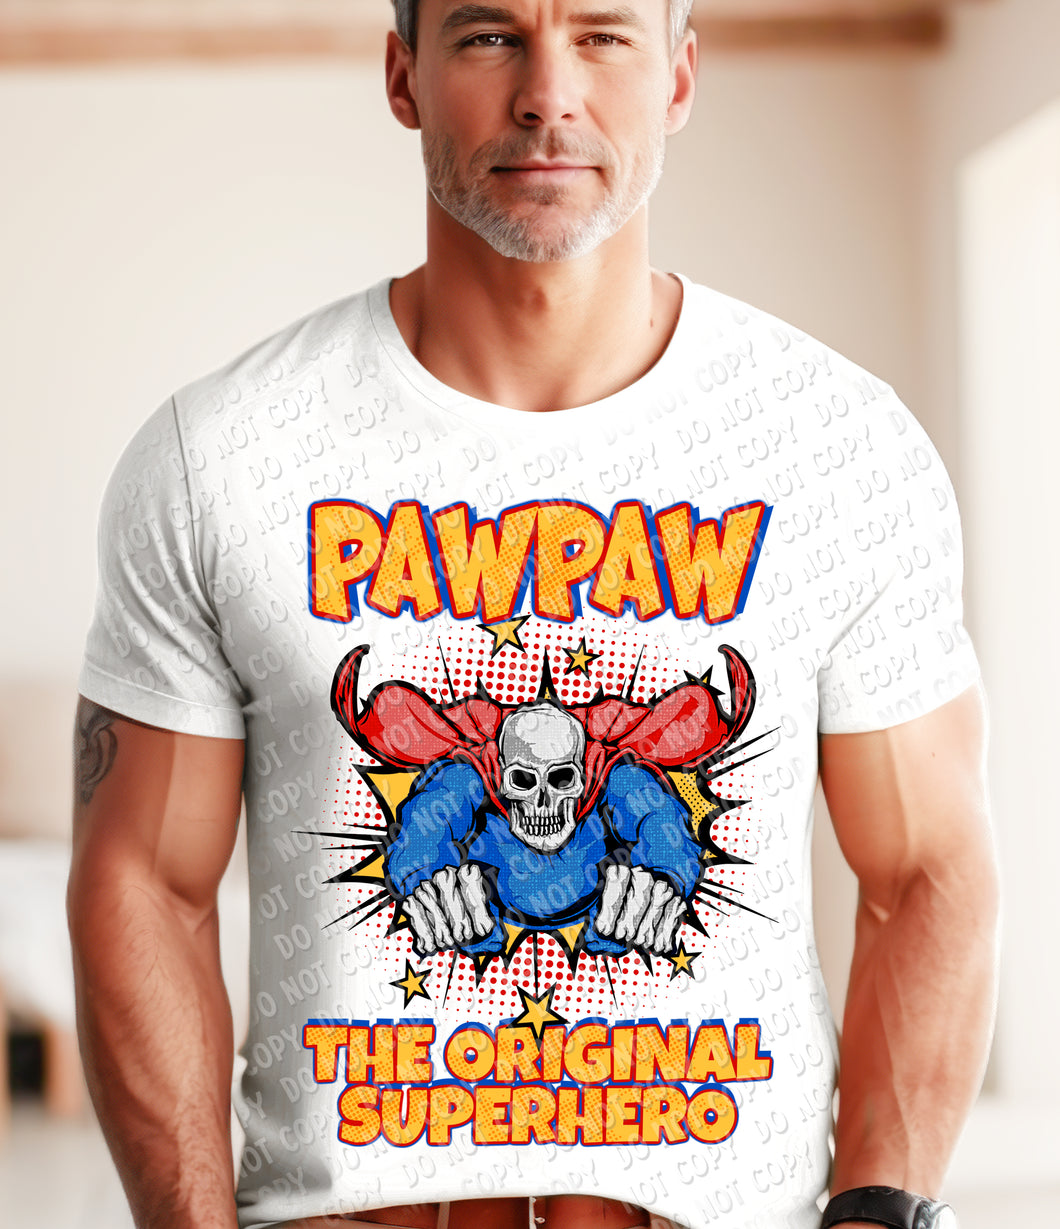 06-21 PawPaw The original superhero DTF TRANSFER ONLY